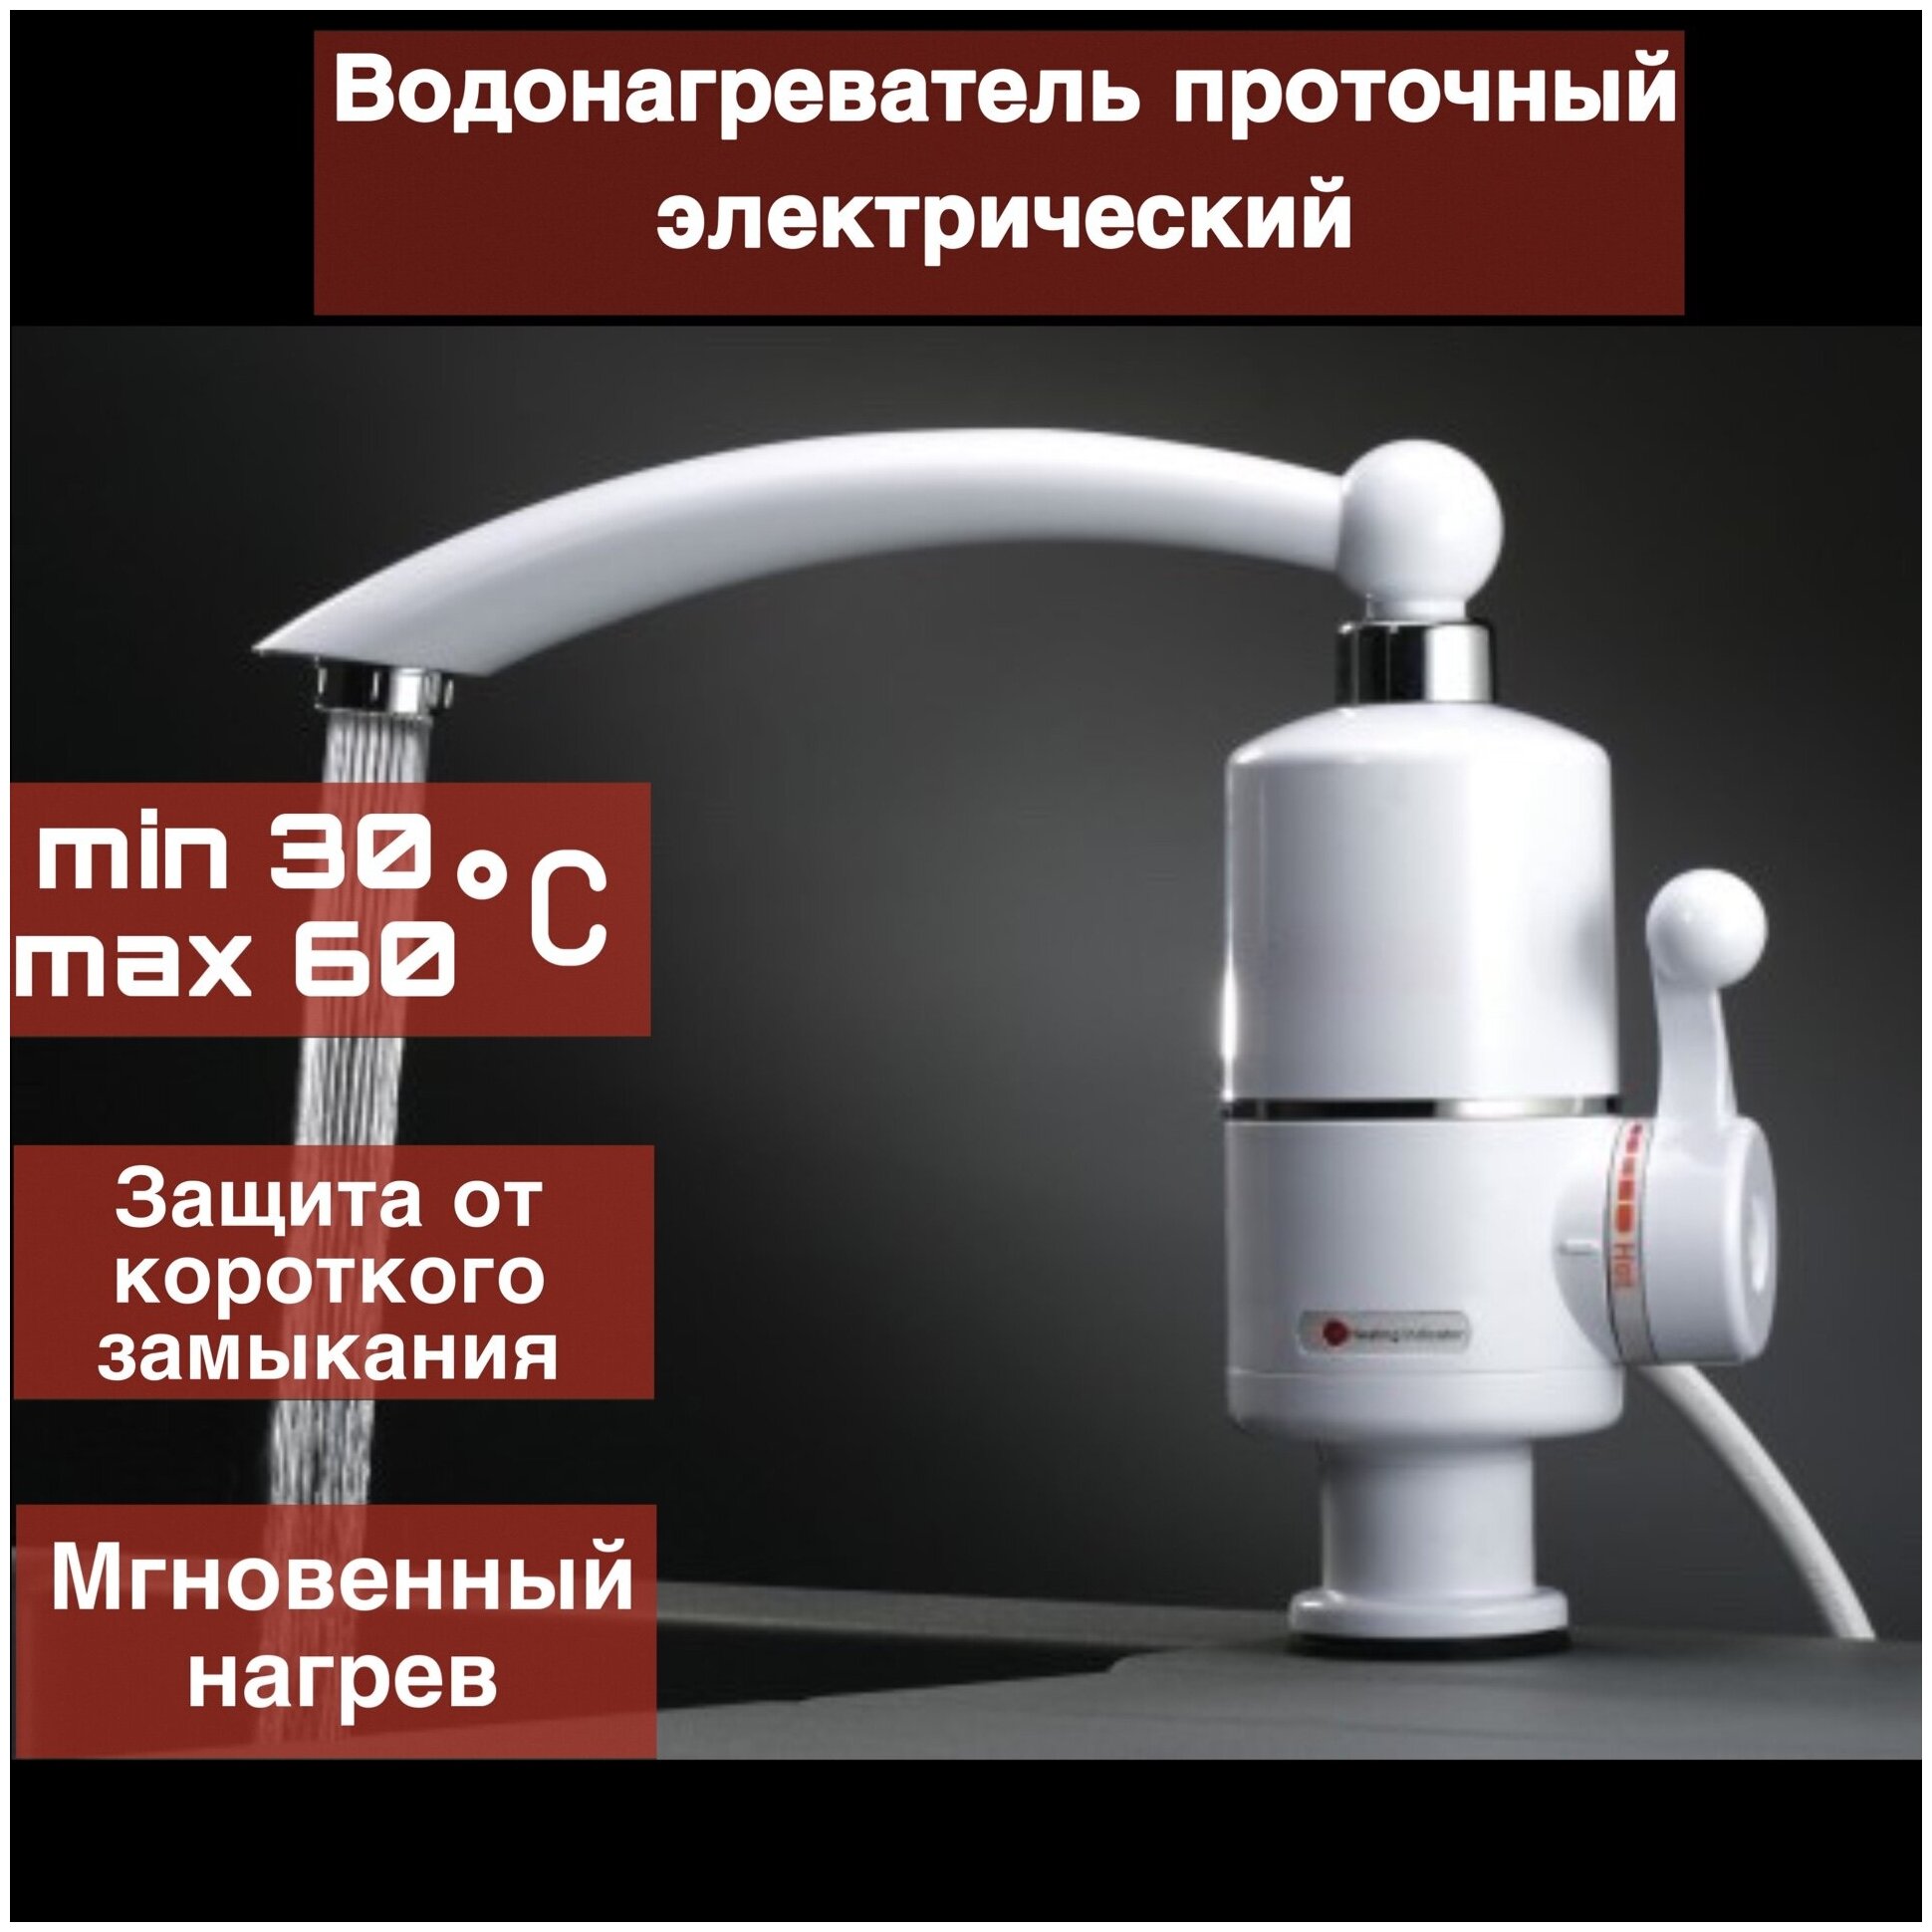 Проточный водонагреватель RX-004 проточный водонагреватель с металлическим краном до 60 градусов, Мини бойлер - фотография № 3